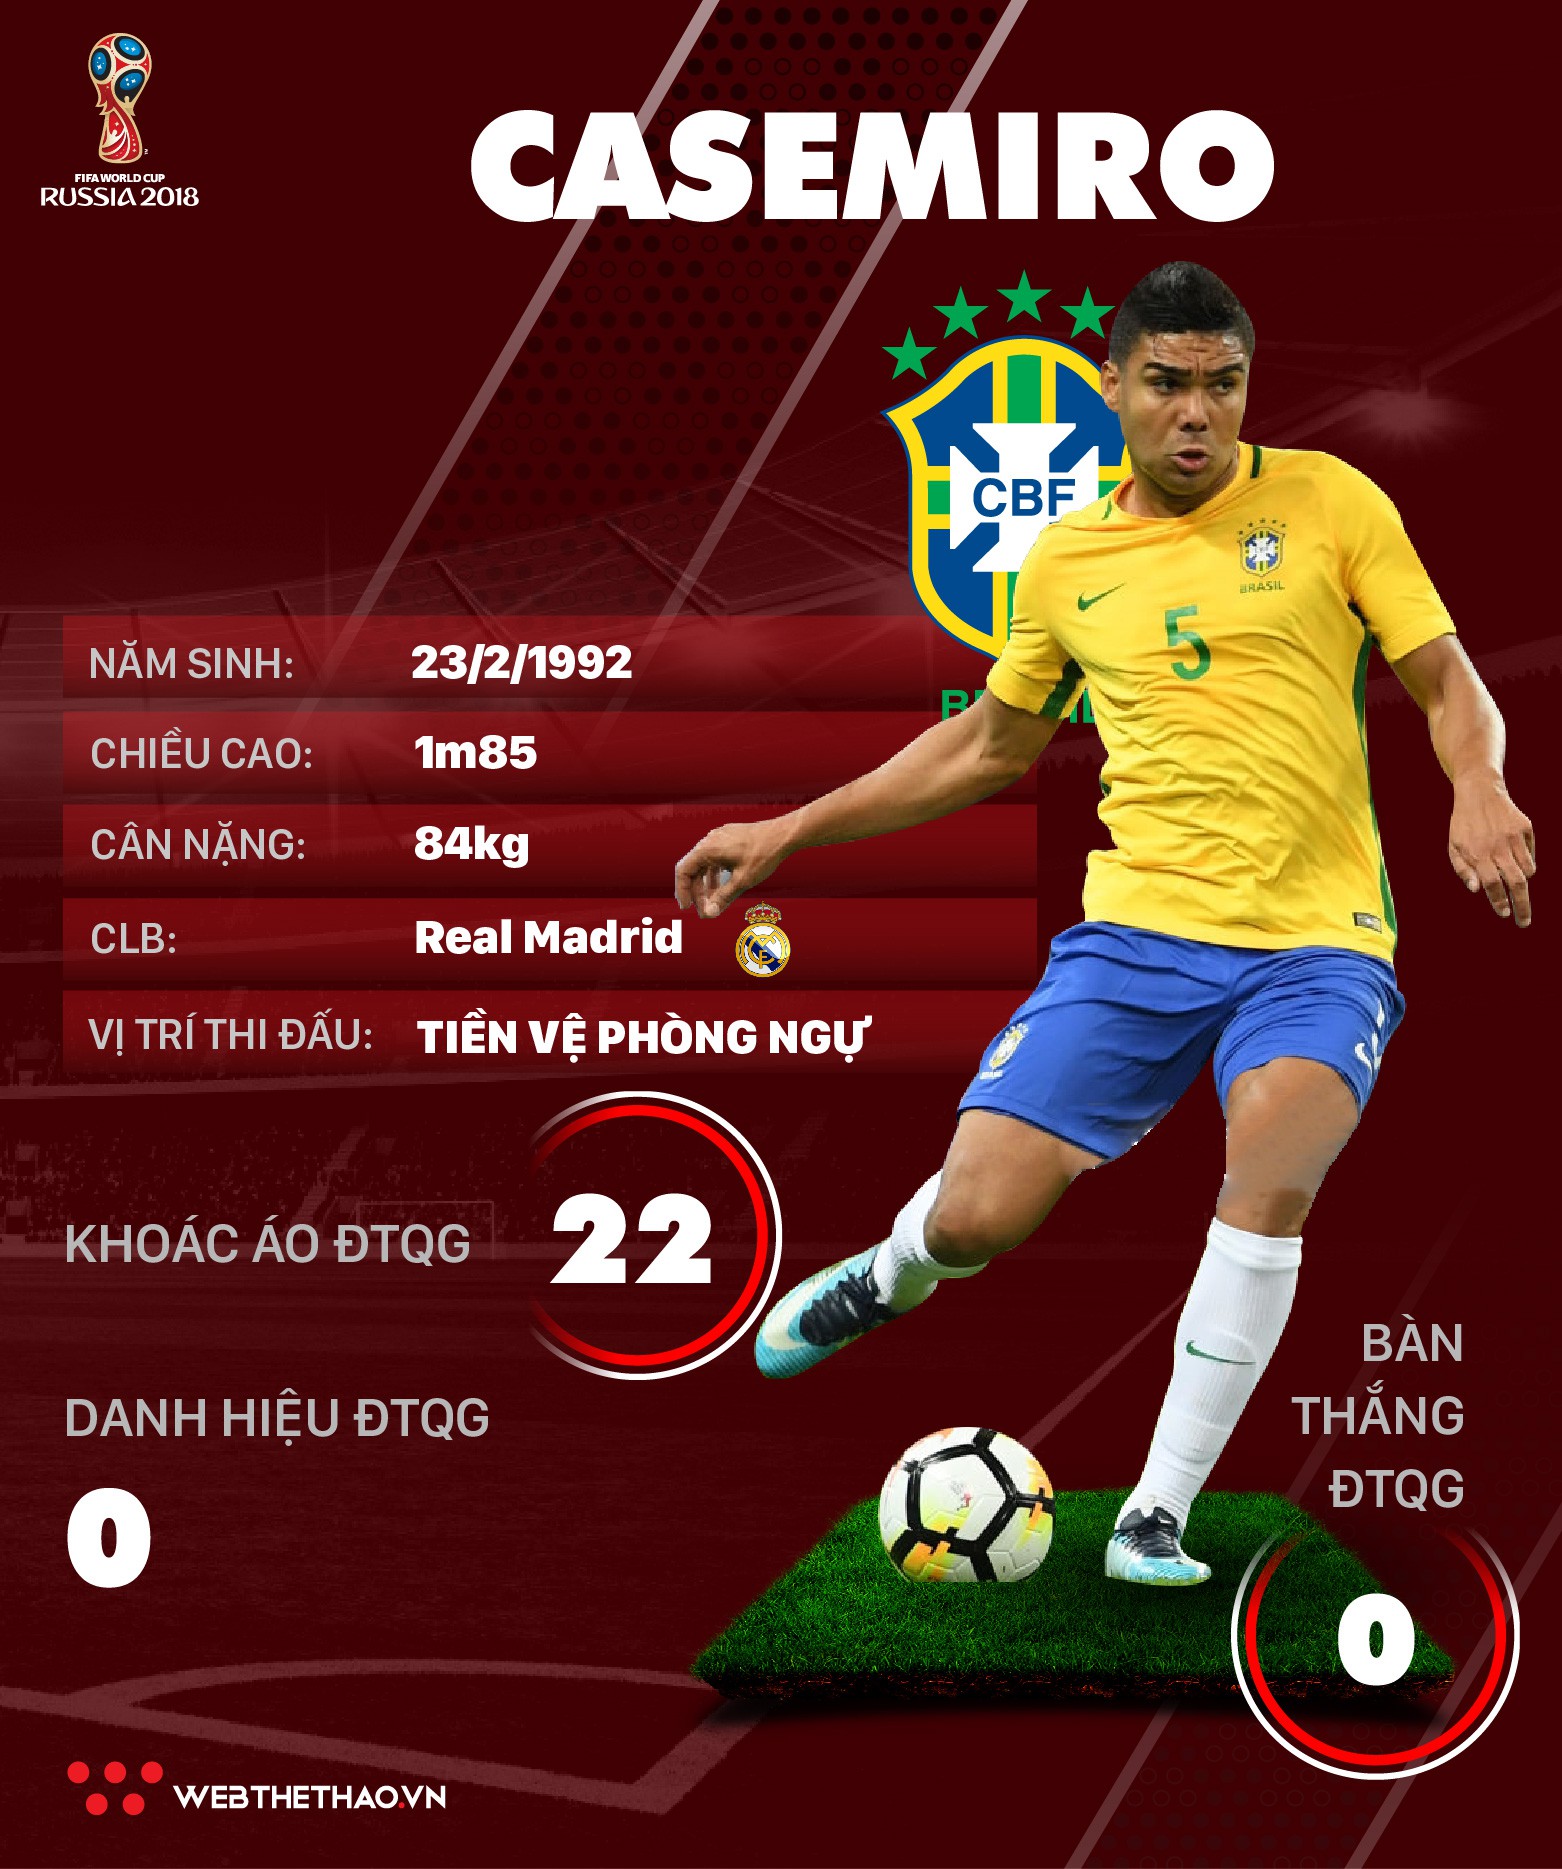 Thông tin cầu thủ Casemiro của ĐT Brazil dự World Cup 2018